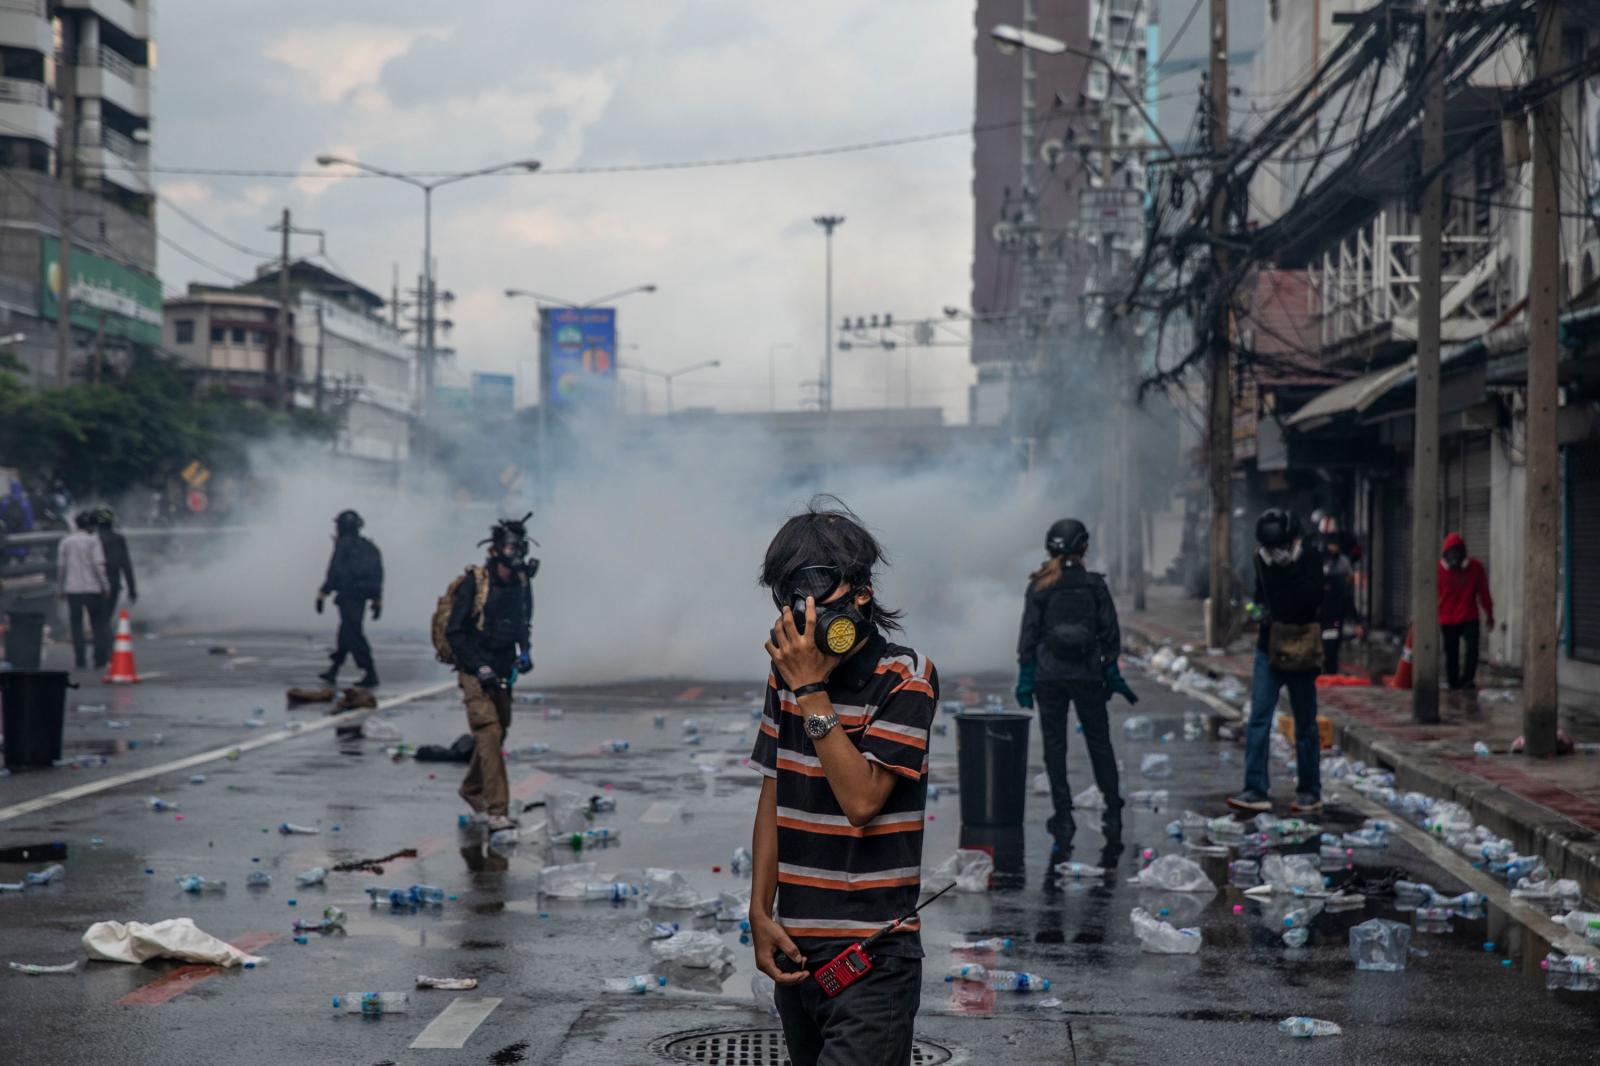 Bangkok Protests Turn Violent Over Mishandling Of Covid-19